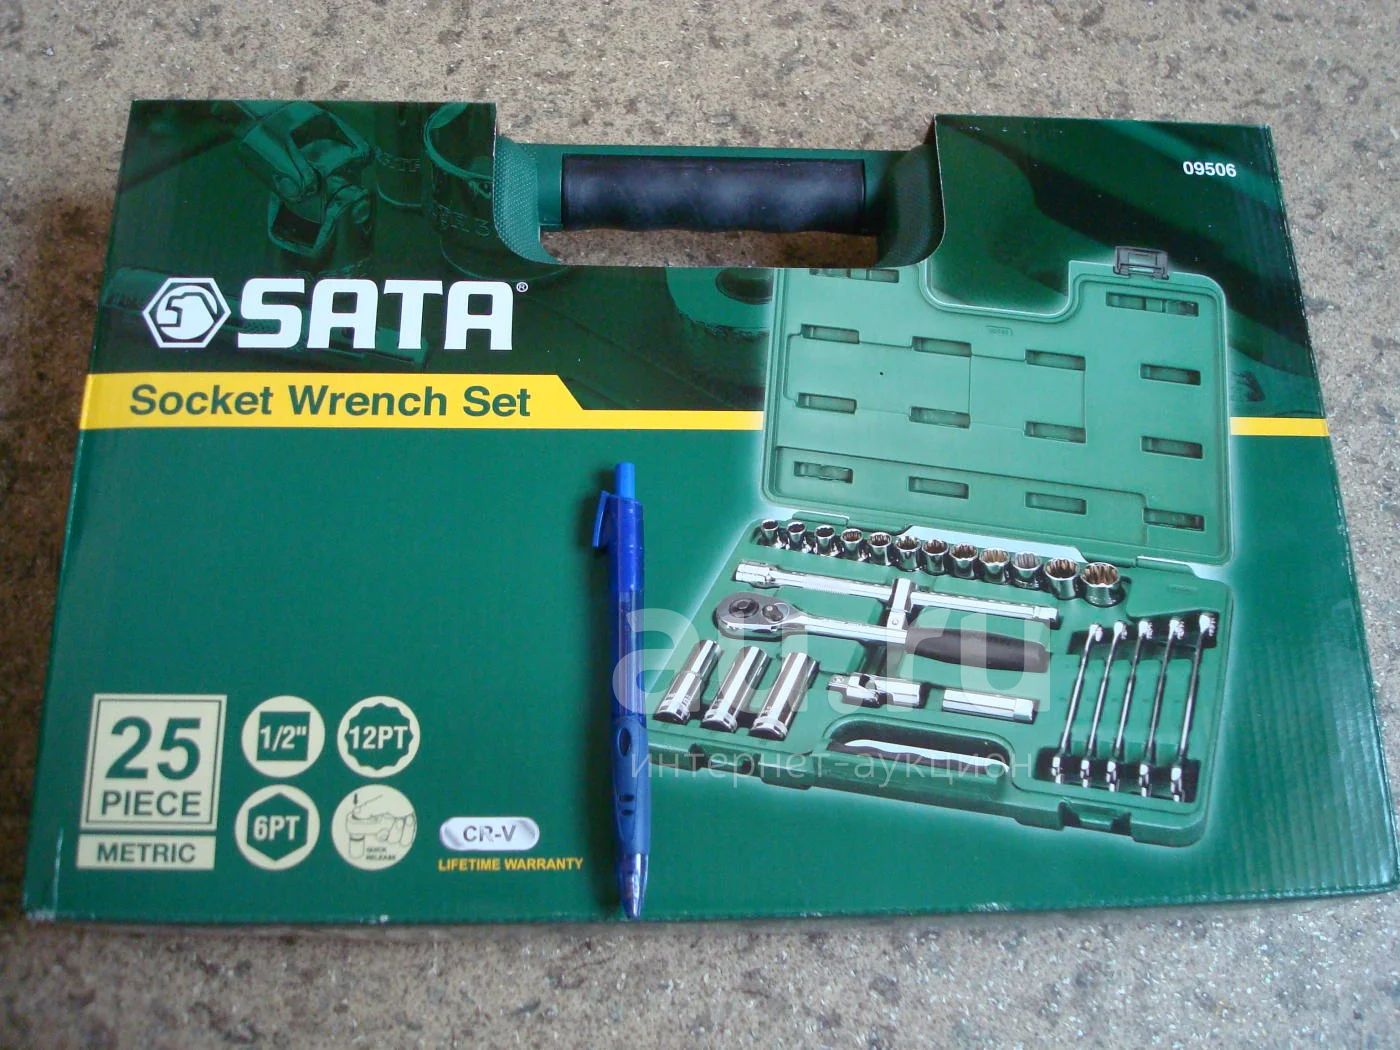 Фирма сата. Набор инструментов SATA 09506. Сата 09506 комплектация. SATA Socket Wrench Set. Сатовский набор 09506.